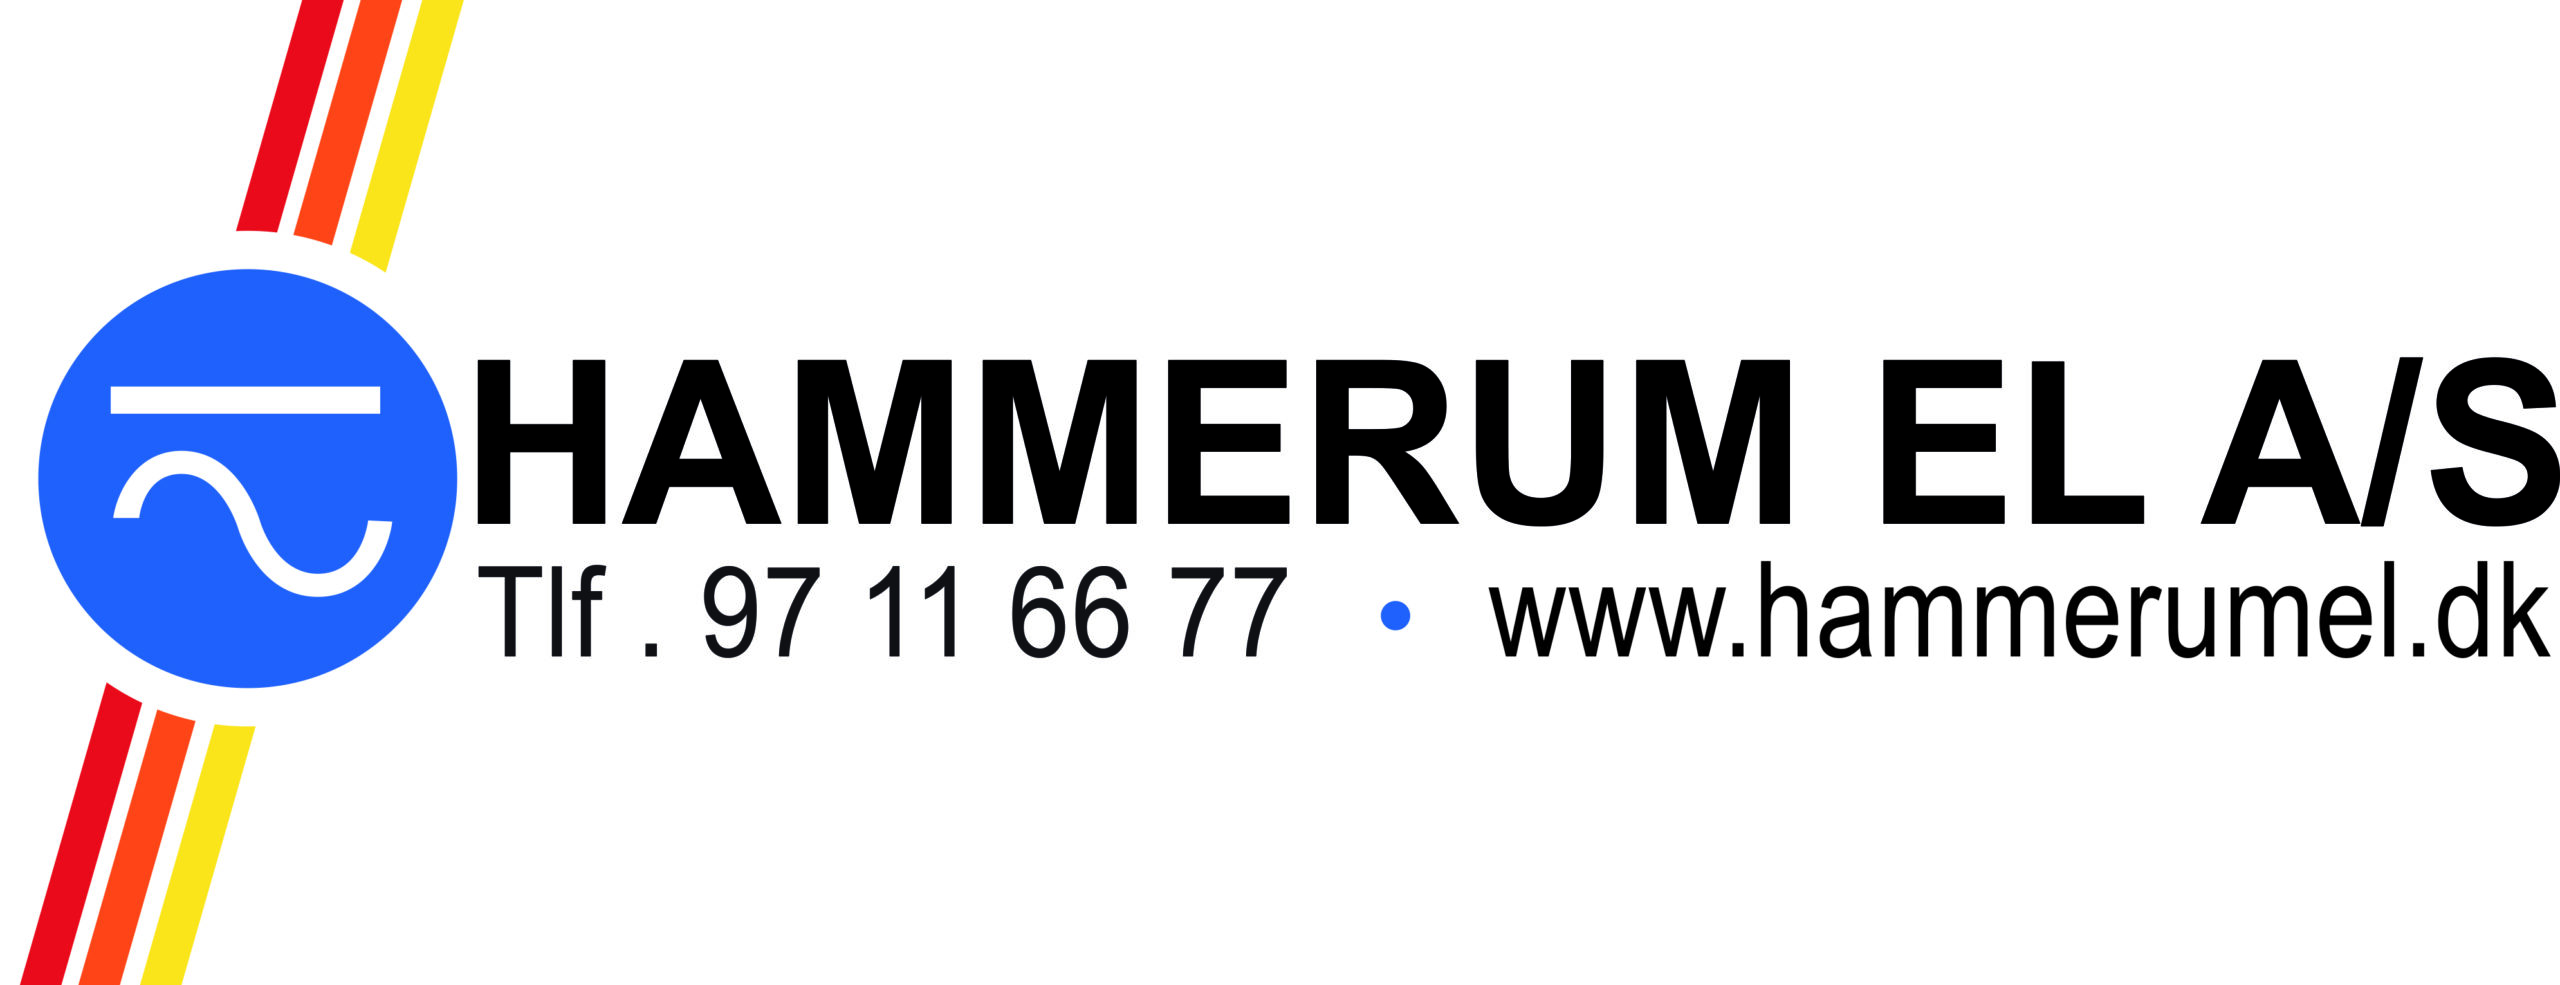 Hammerumel logo scaled